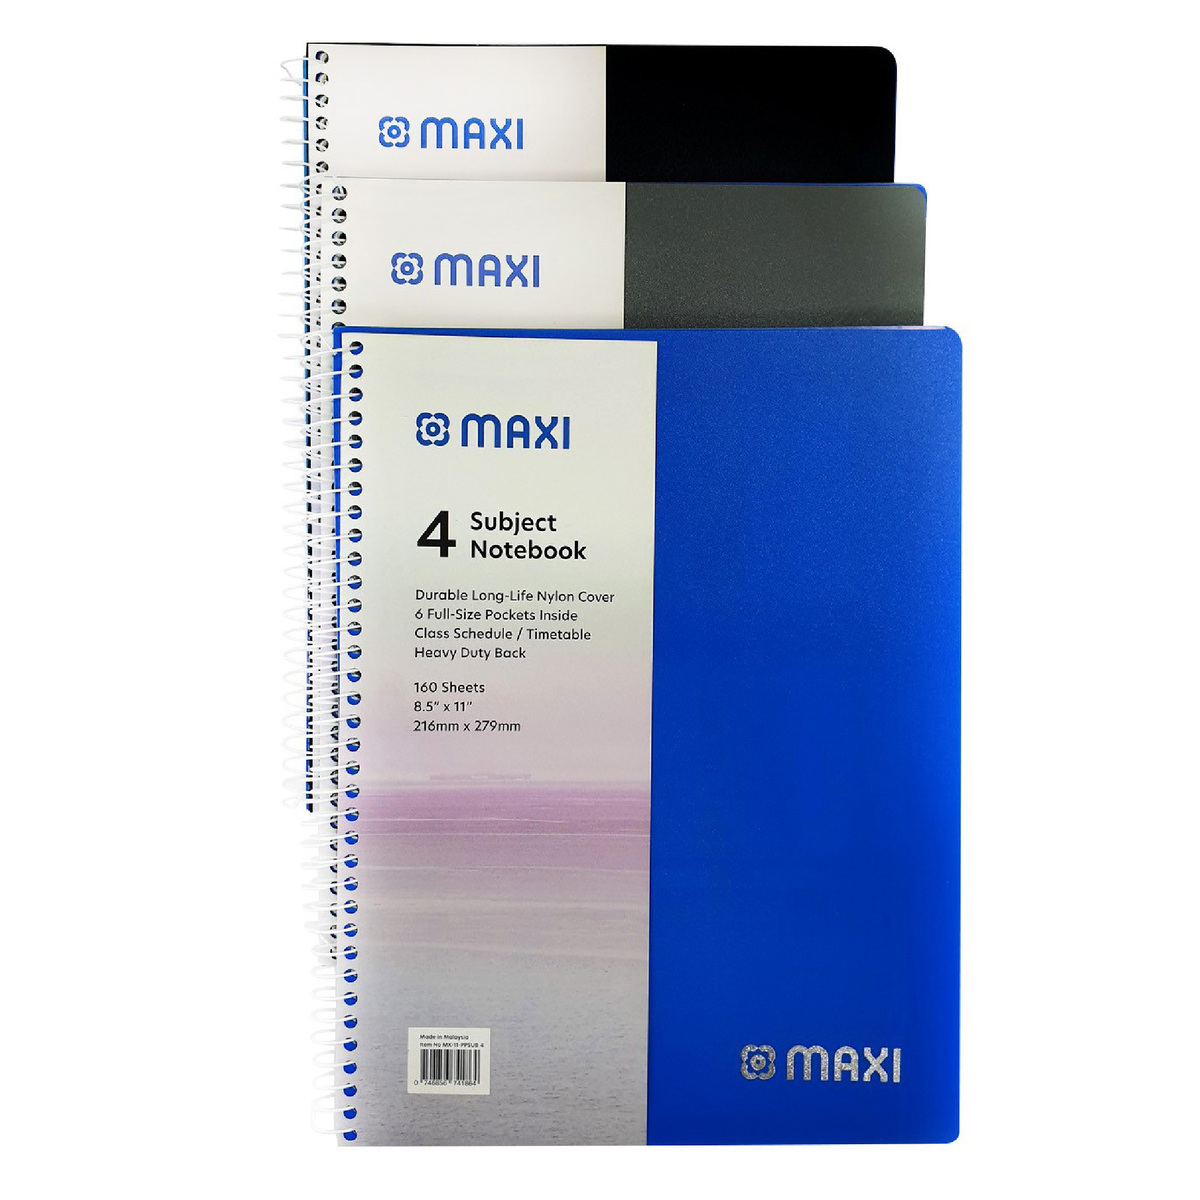 ماكسي مفكرة ورقية بسلك من مادة البولي بروبيلين 4 موضوعات ، 11 بوصة × 8.5 بوصة ، 160 ورقة ، ألوان متنوعة ، MX-11-PPSUB4